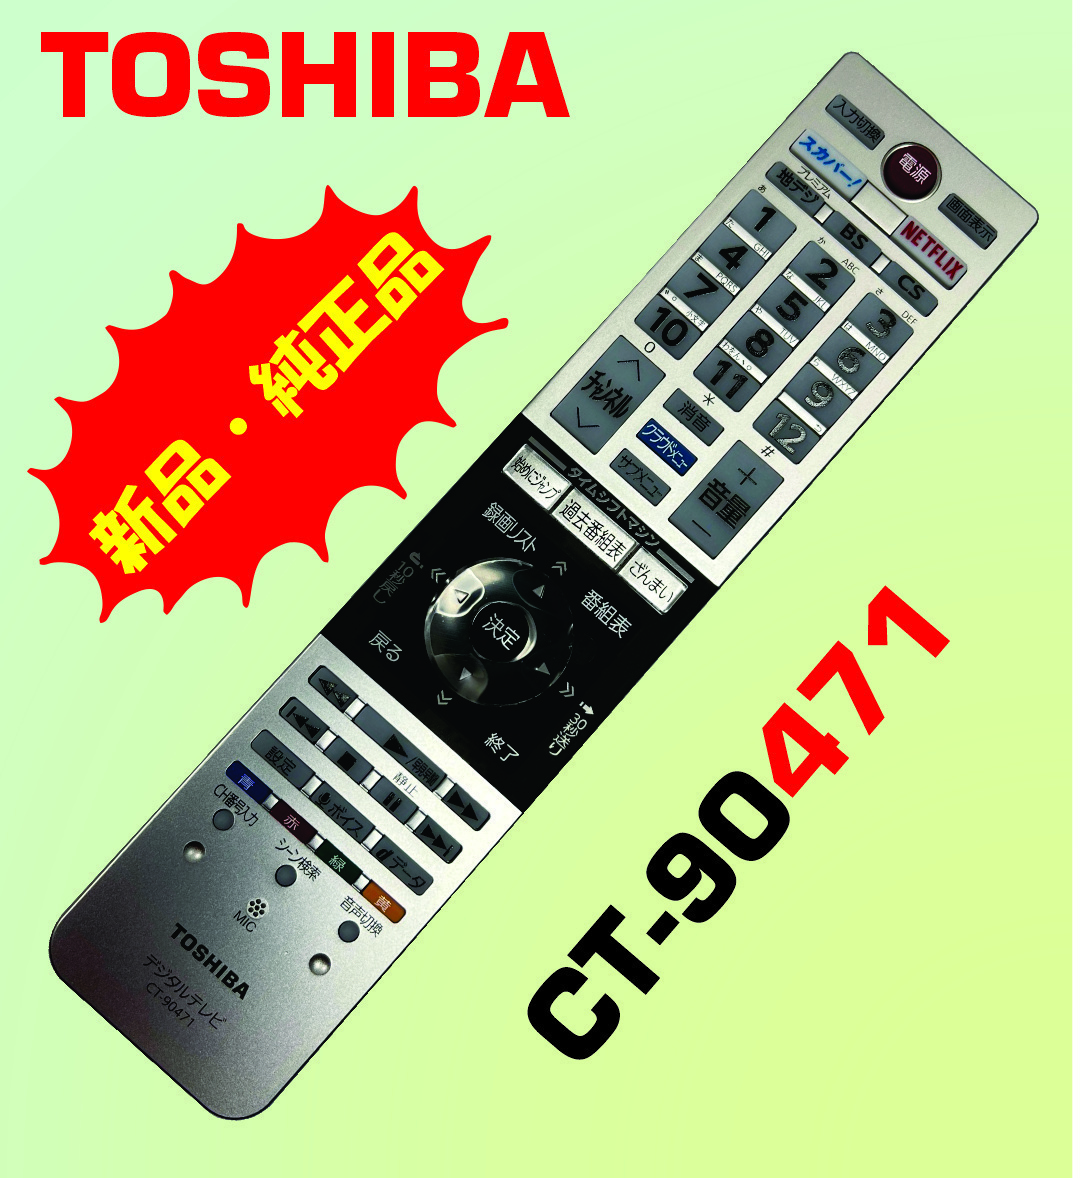 ....(9)TOSHIBA новый товар Toshiba жидкокристаллический телевизор дистанционный пульт CT-90471 Z20X серии соответствует 65Z20X,58Z20X,50Z20X соответствует 